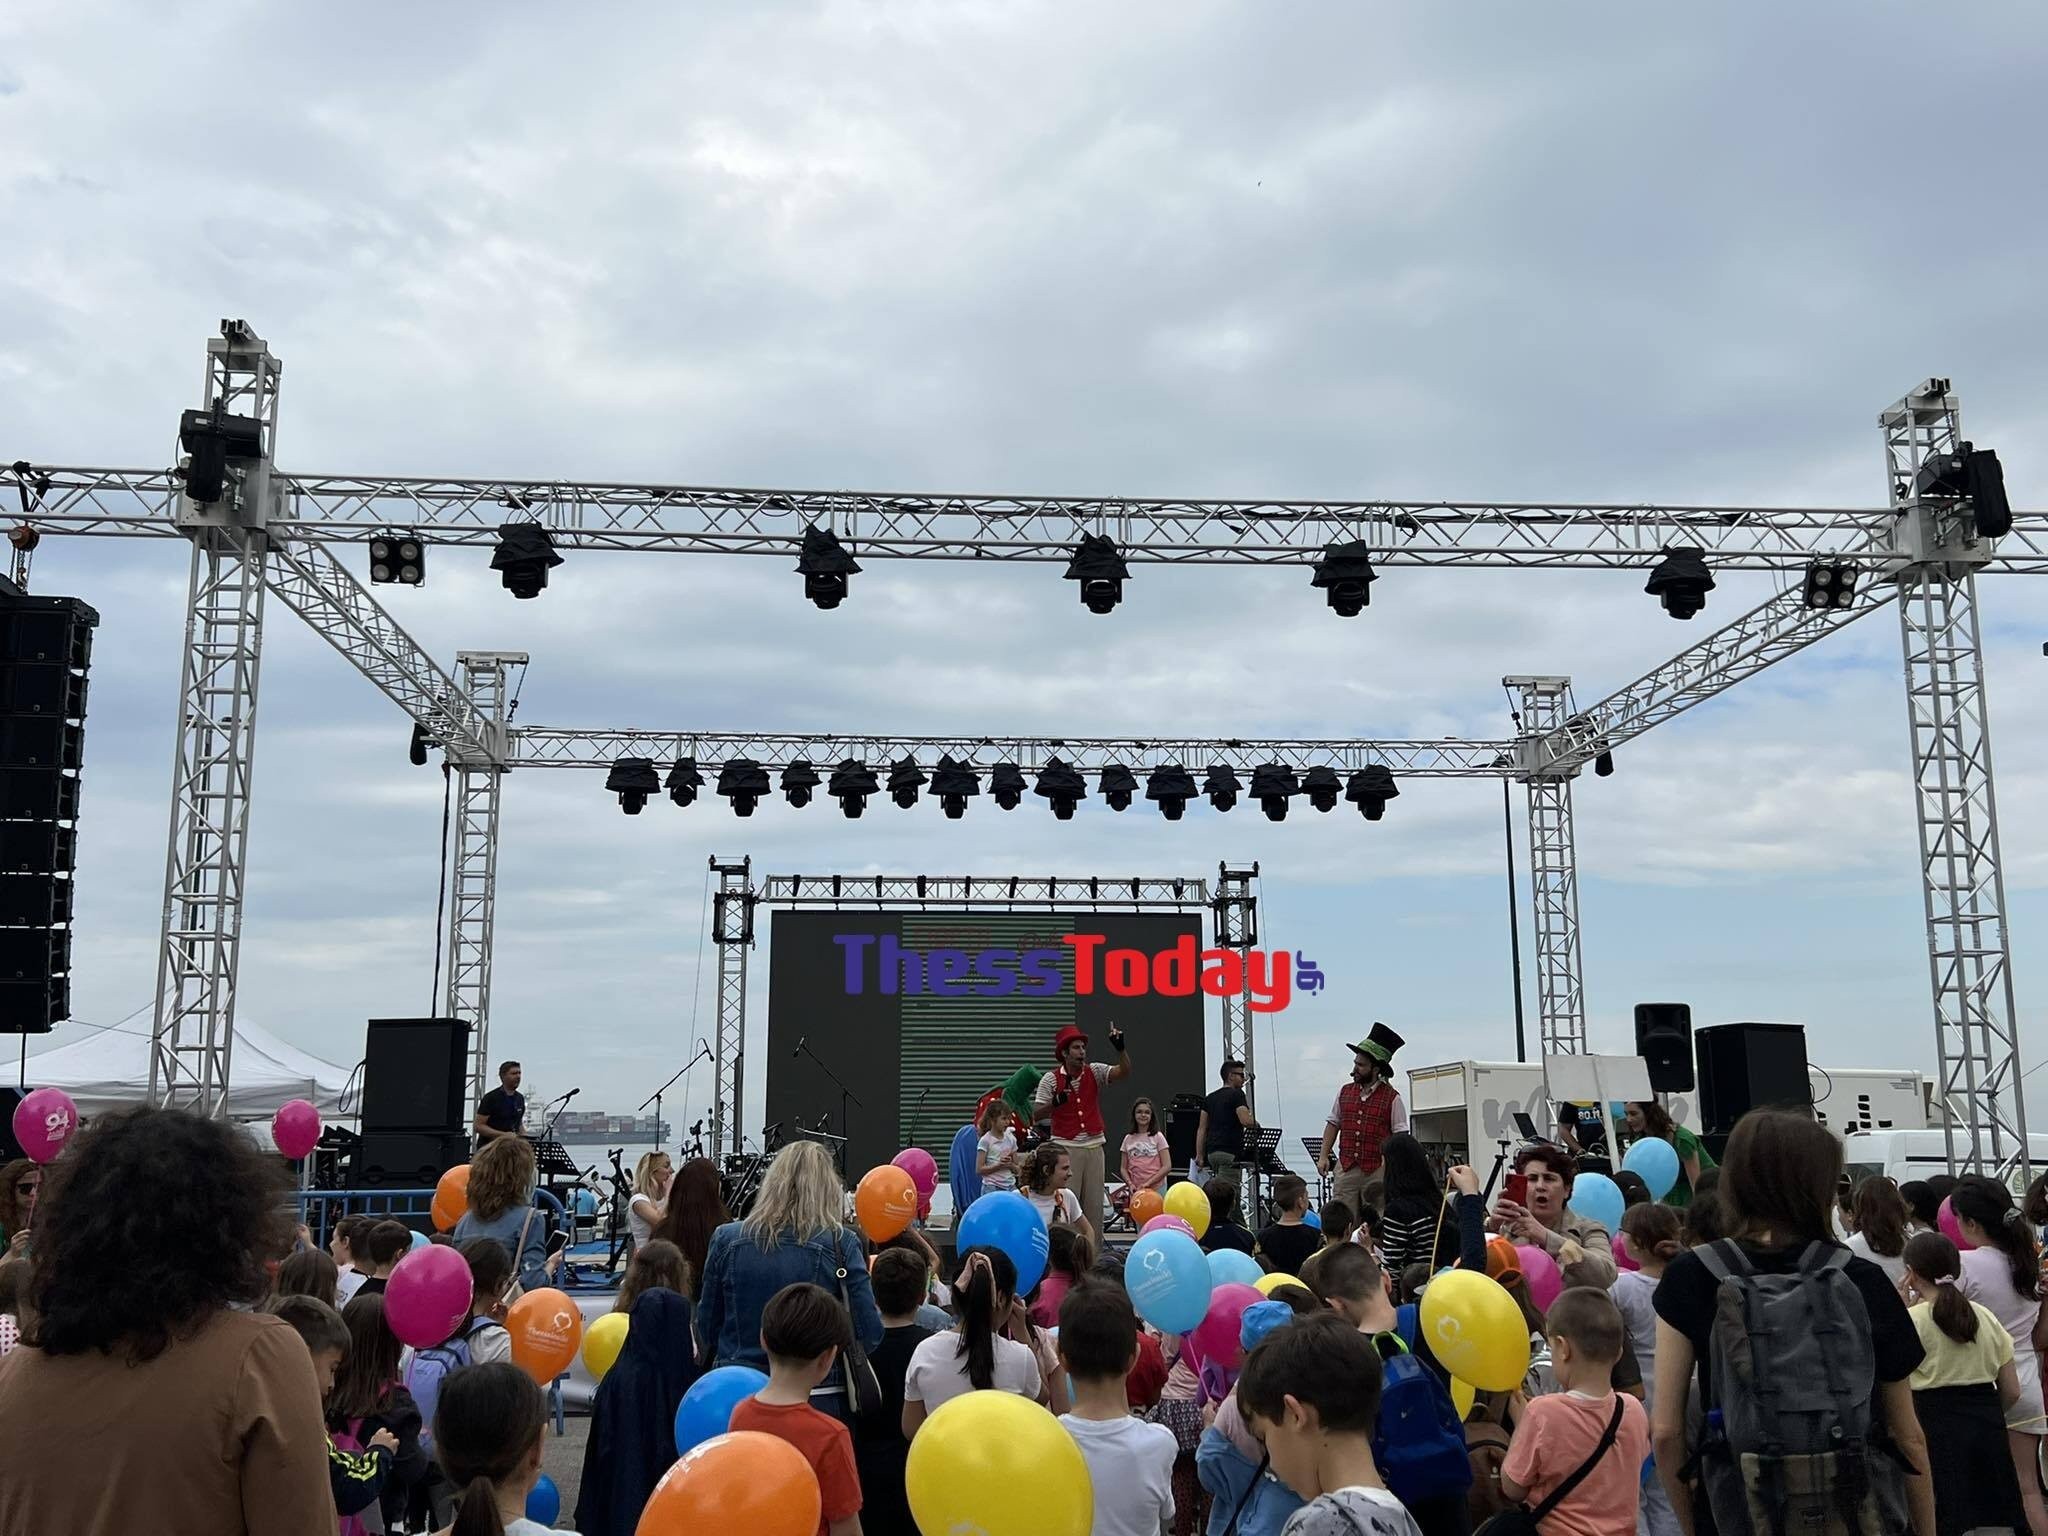 Θεσσαλονίκη: Με αερόστατο, ρομπότ και δωρεάν φρούτα σβήνουν τα 94 κεράκια τους οι λαϊκές αγορές